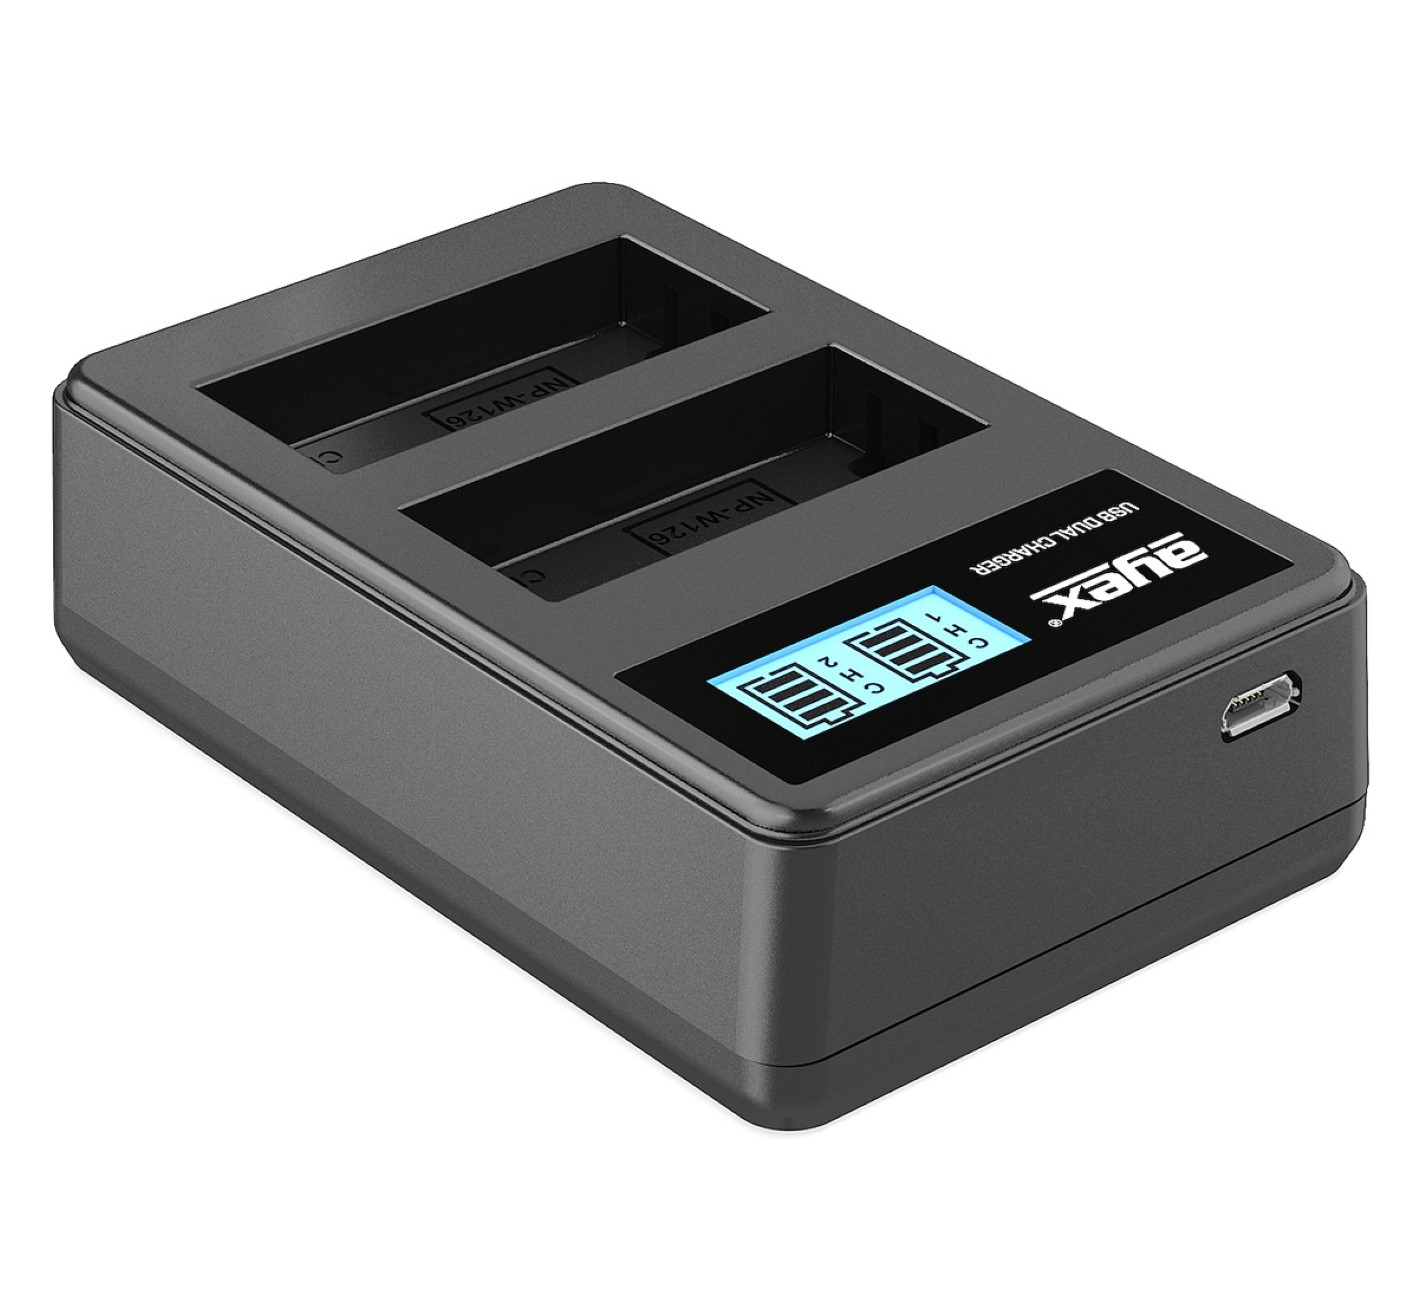 USB Akkus, für Ladegerät Lader, Dual Fujifilm Kamera-Akku Black AYEX NP-W126